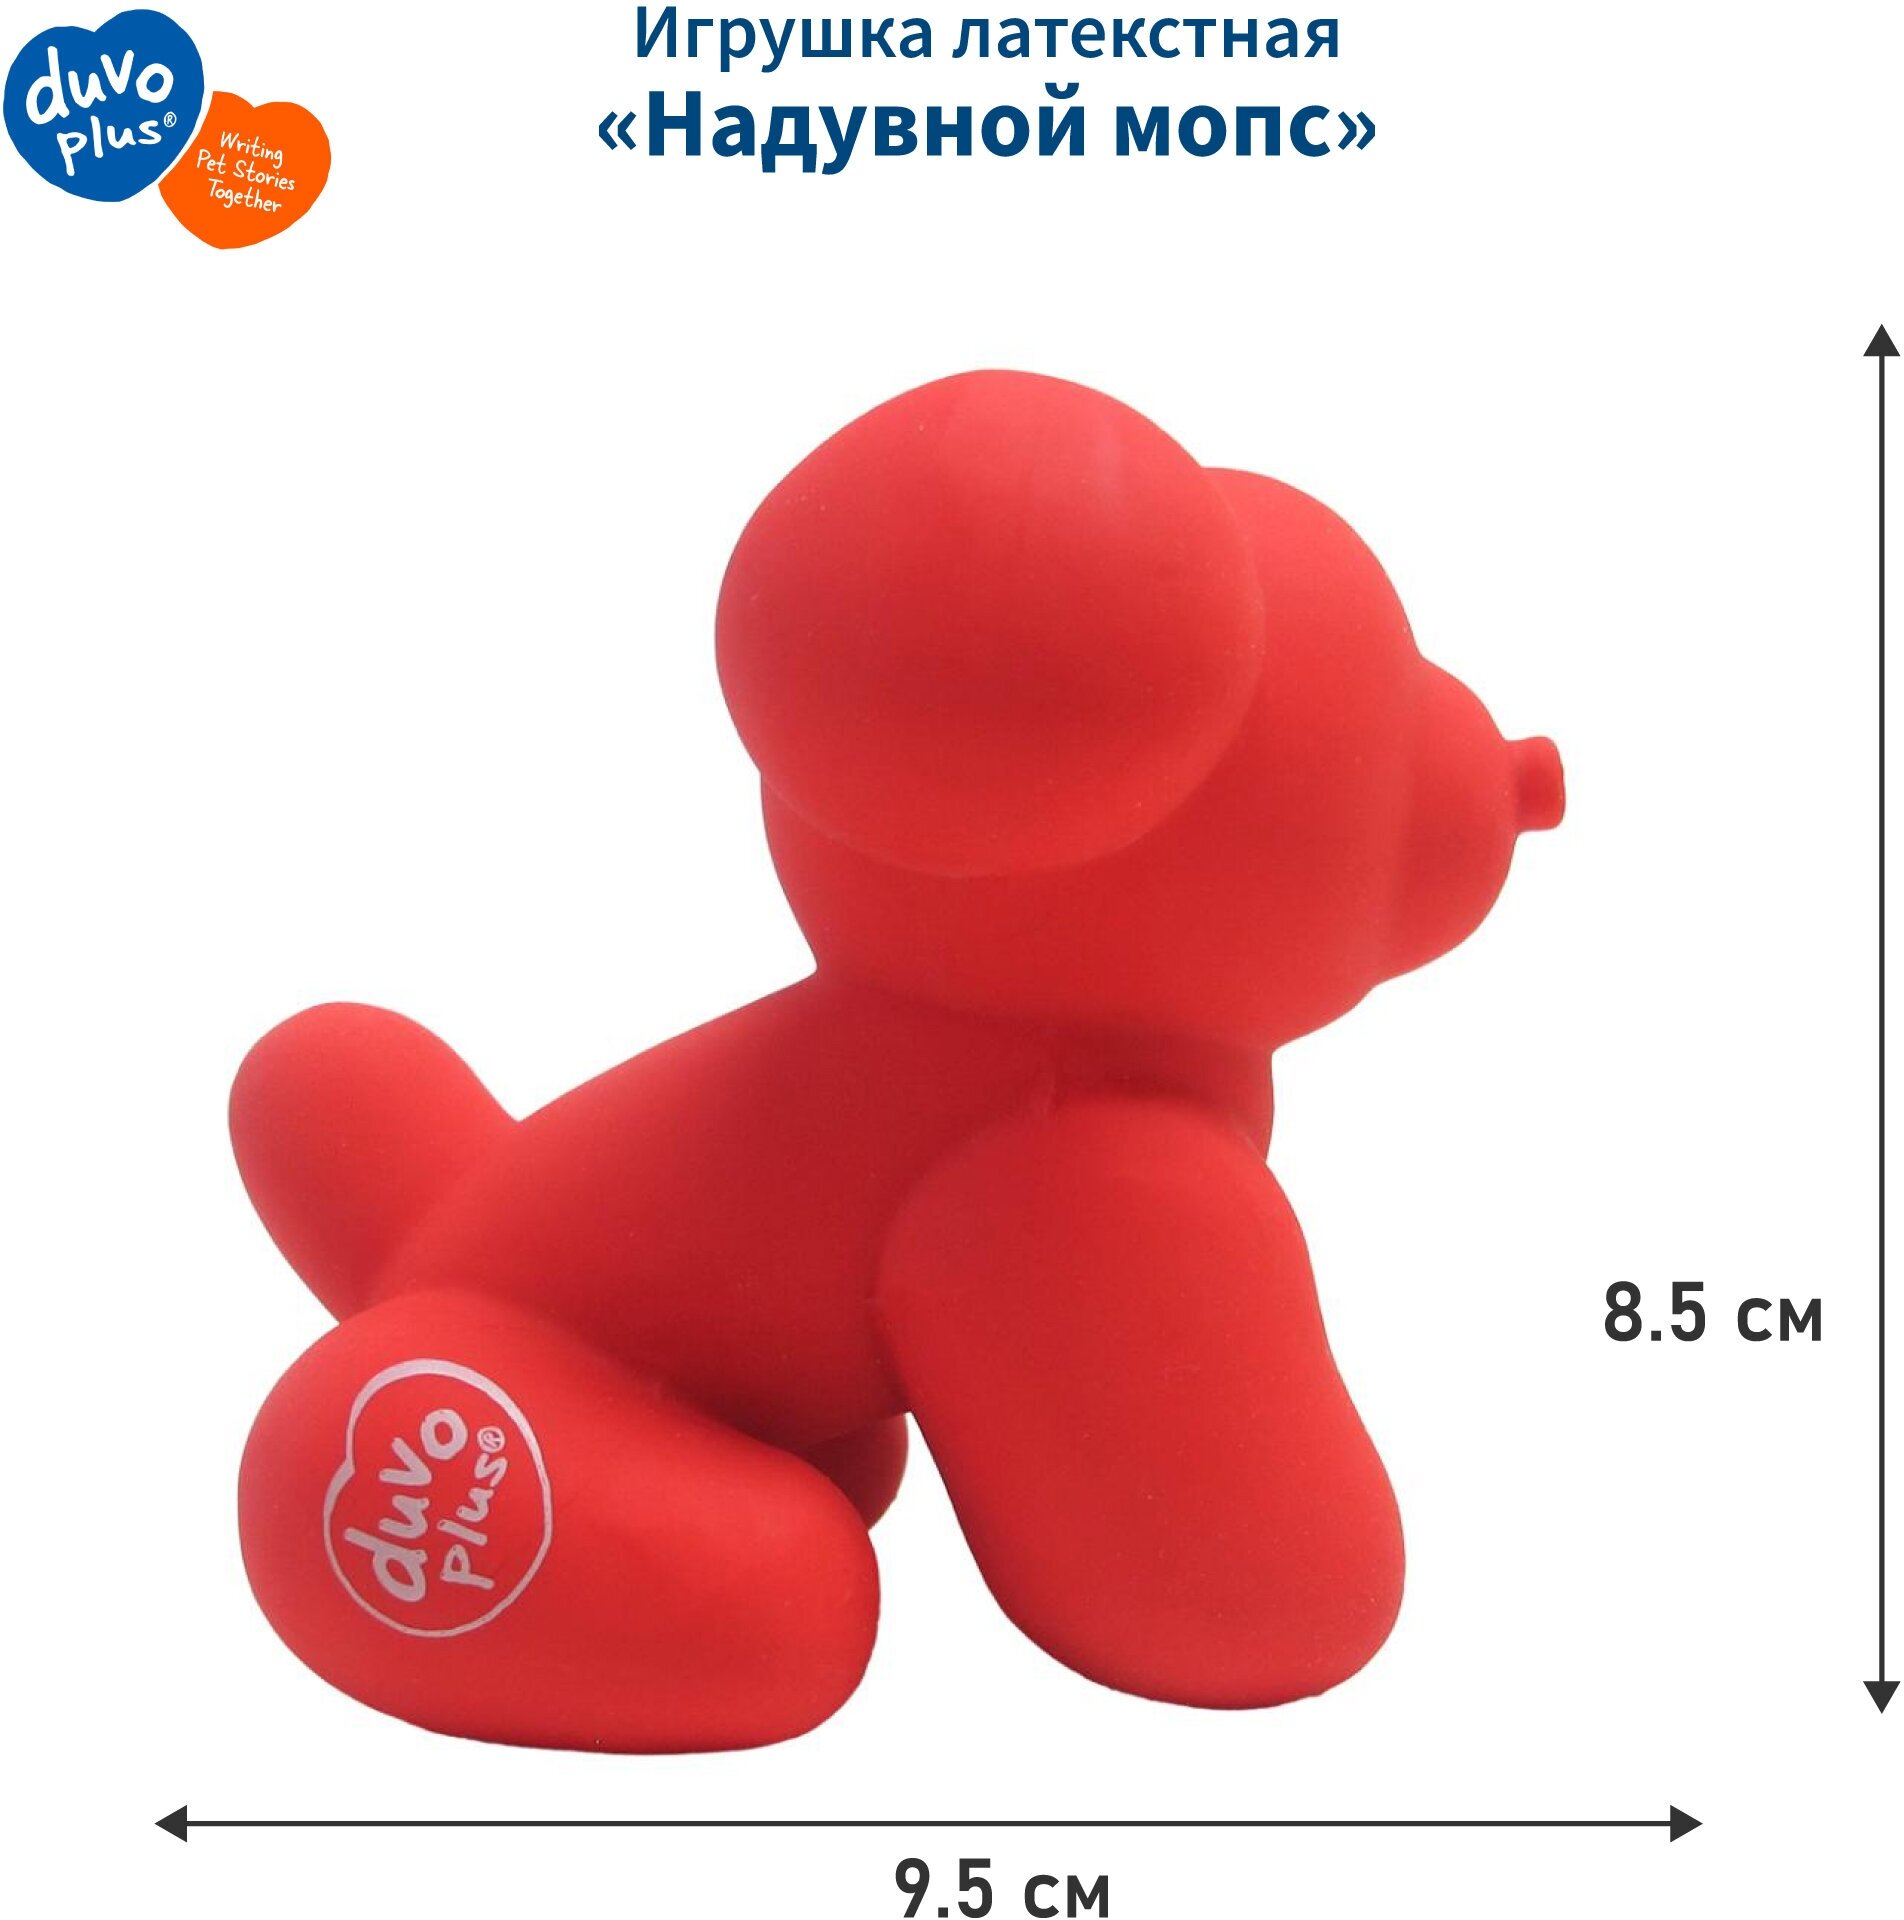 Игрушка для собак латексная DUVO+ "Надувной мопс", красная, 9.5x6x8.5см (Бельгия)